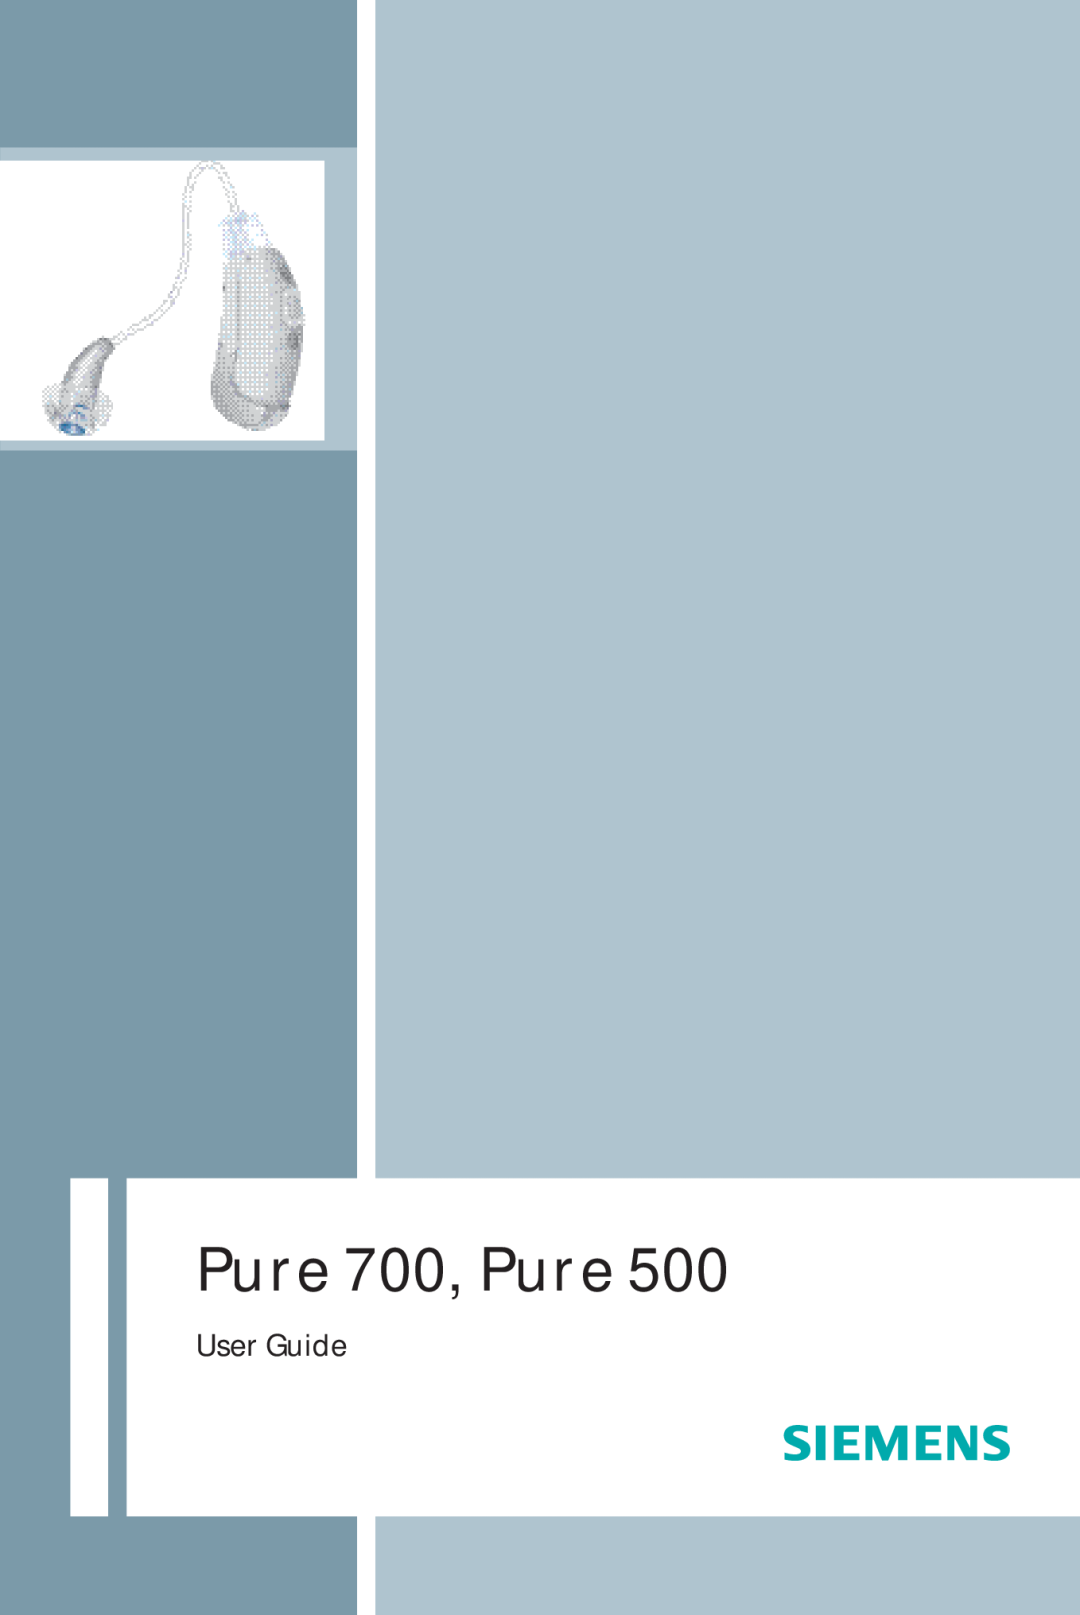 Siemens 700, 500 manual User Guide, Pure 